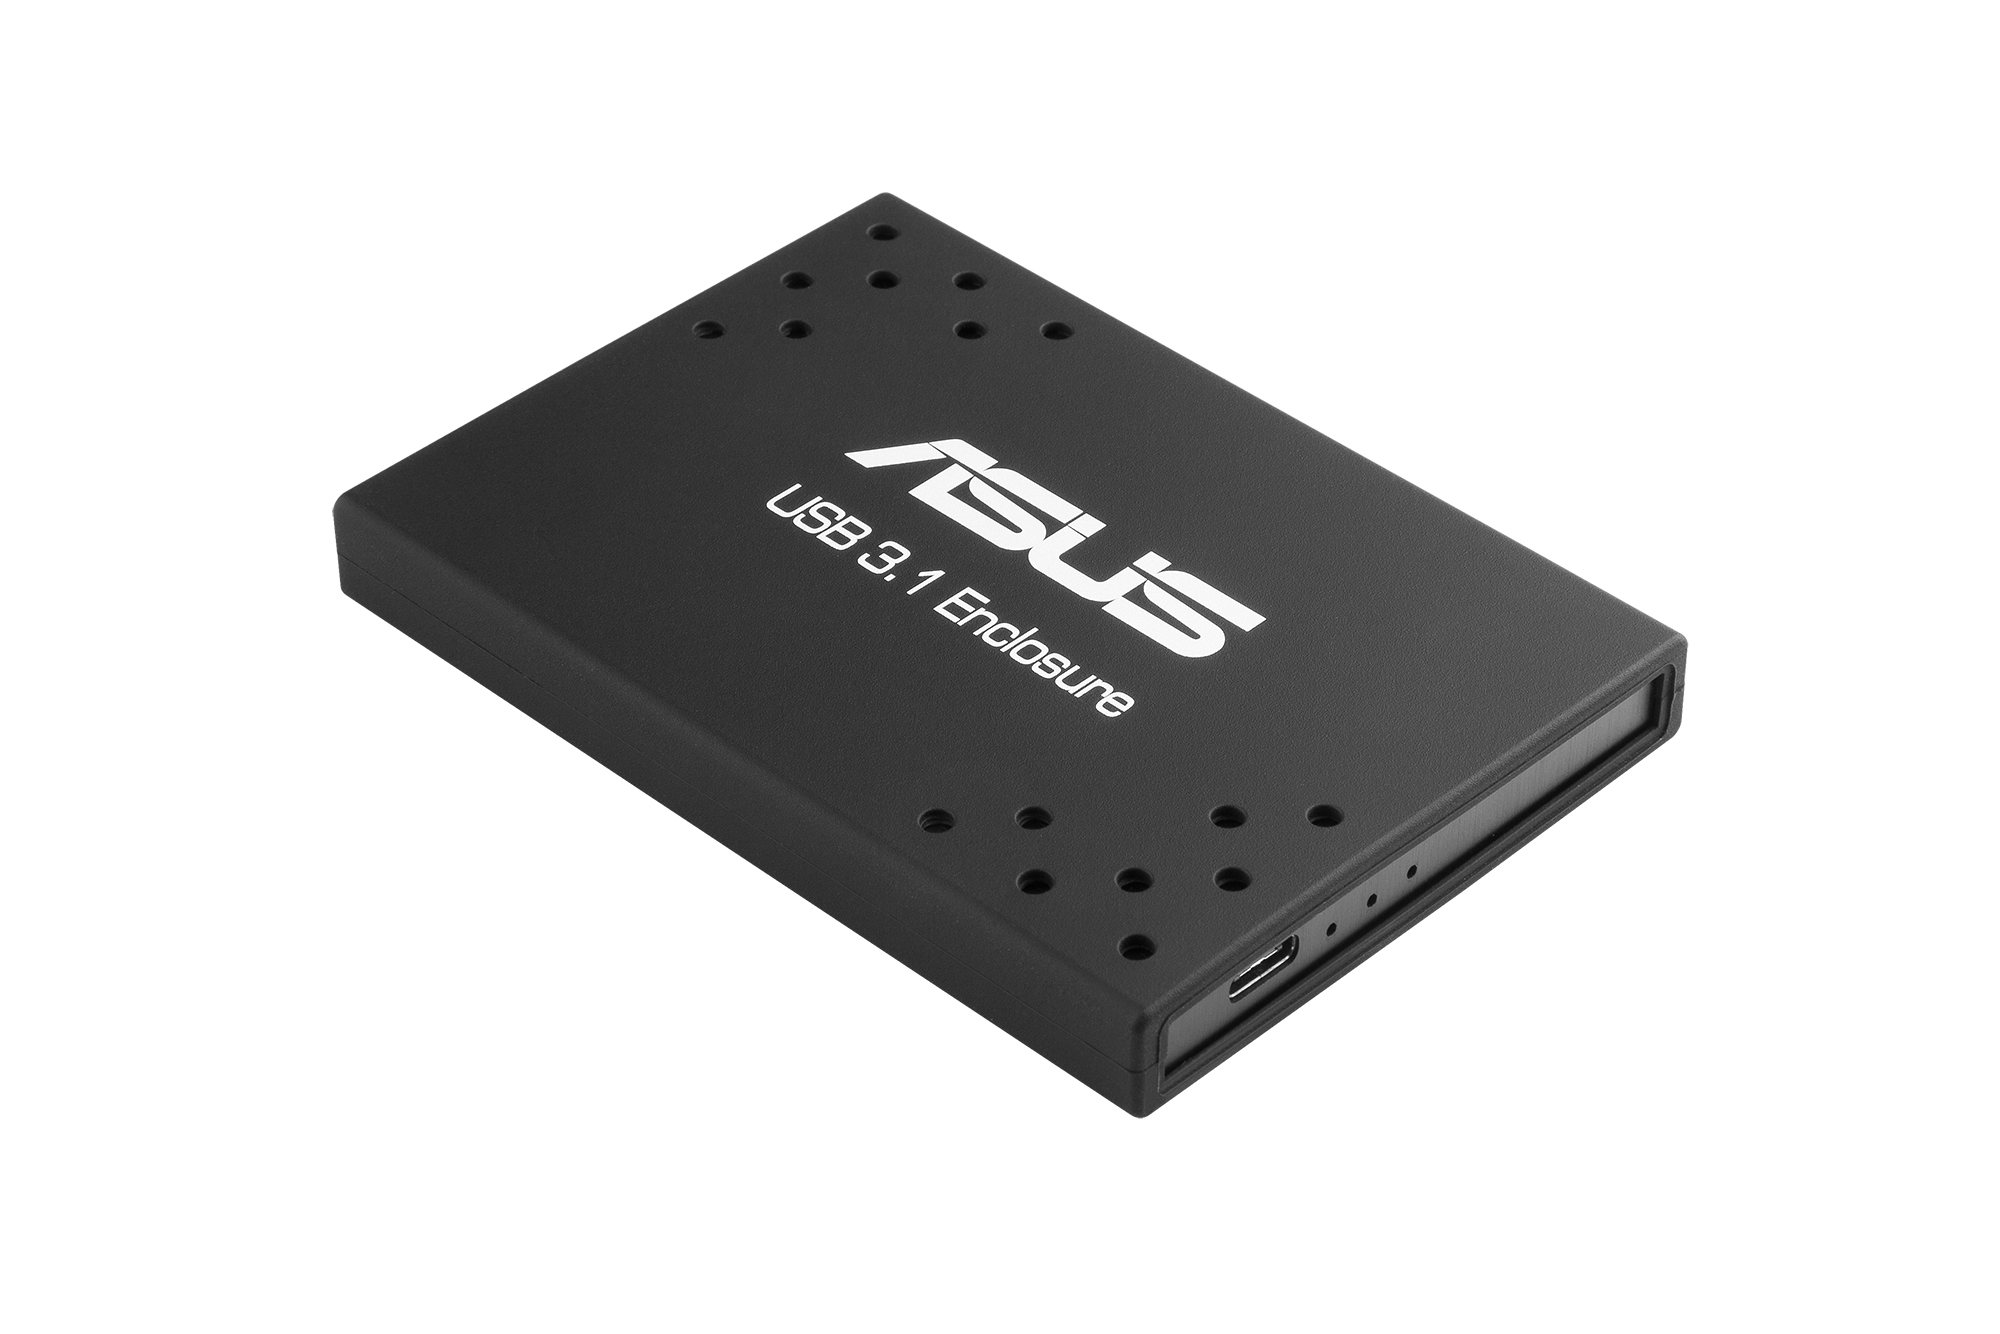 ASUS annonce un SSD externe en USB3.1 type C